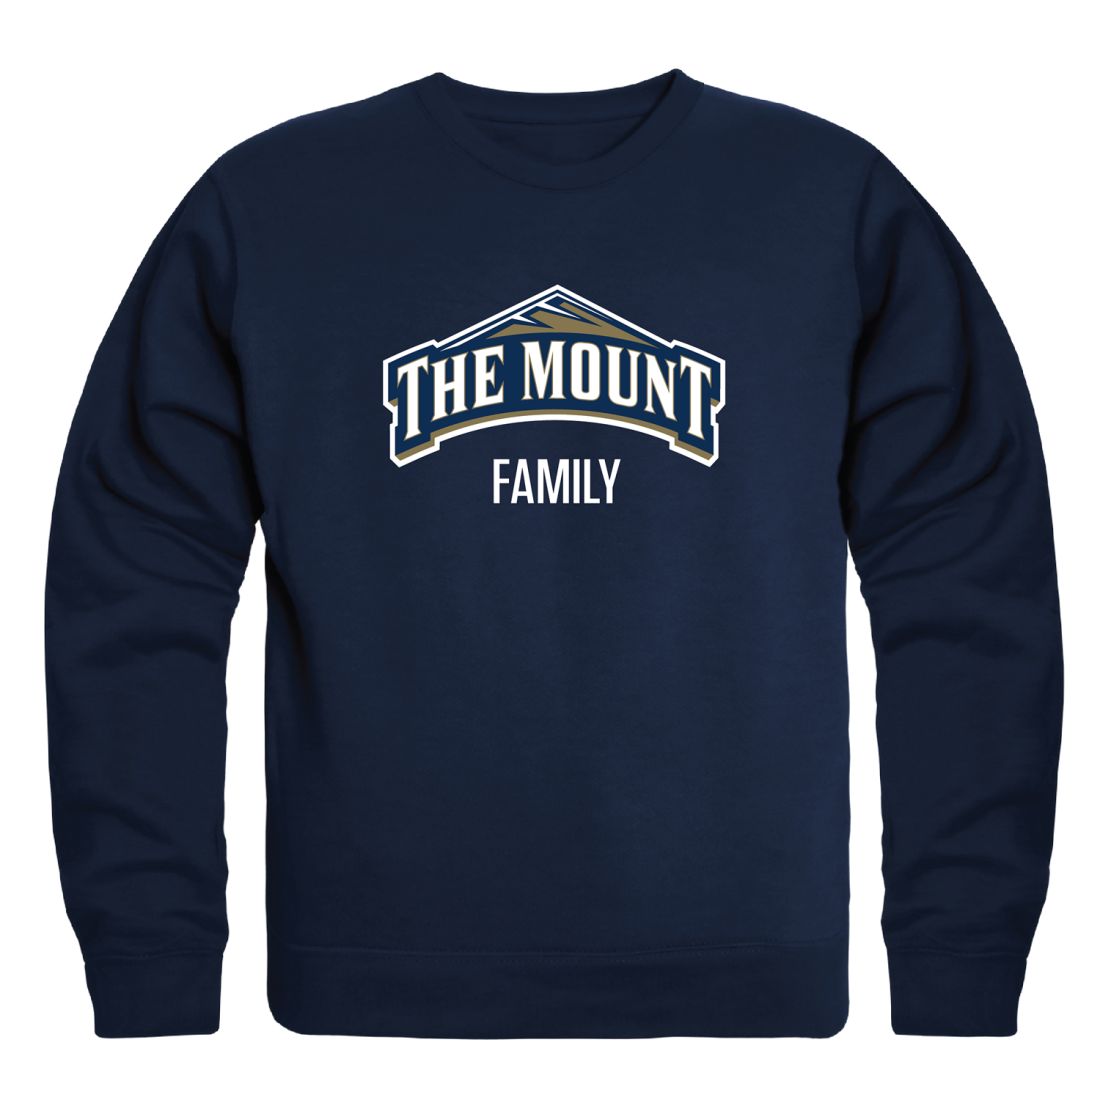 Mount-St-Mary's-University-Mountaineers-Mountaineers-Mountaineers-Family-Fleece-Crewneck-Pullover-Sweatshirt